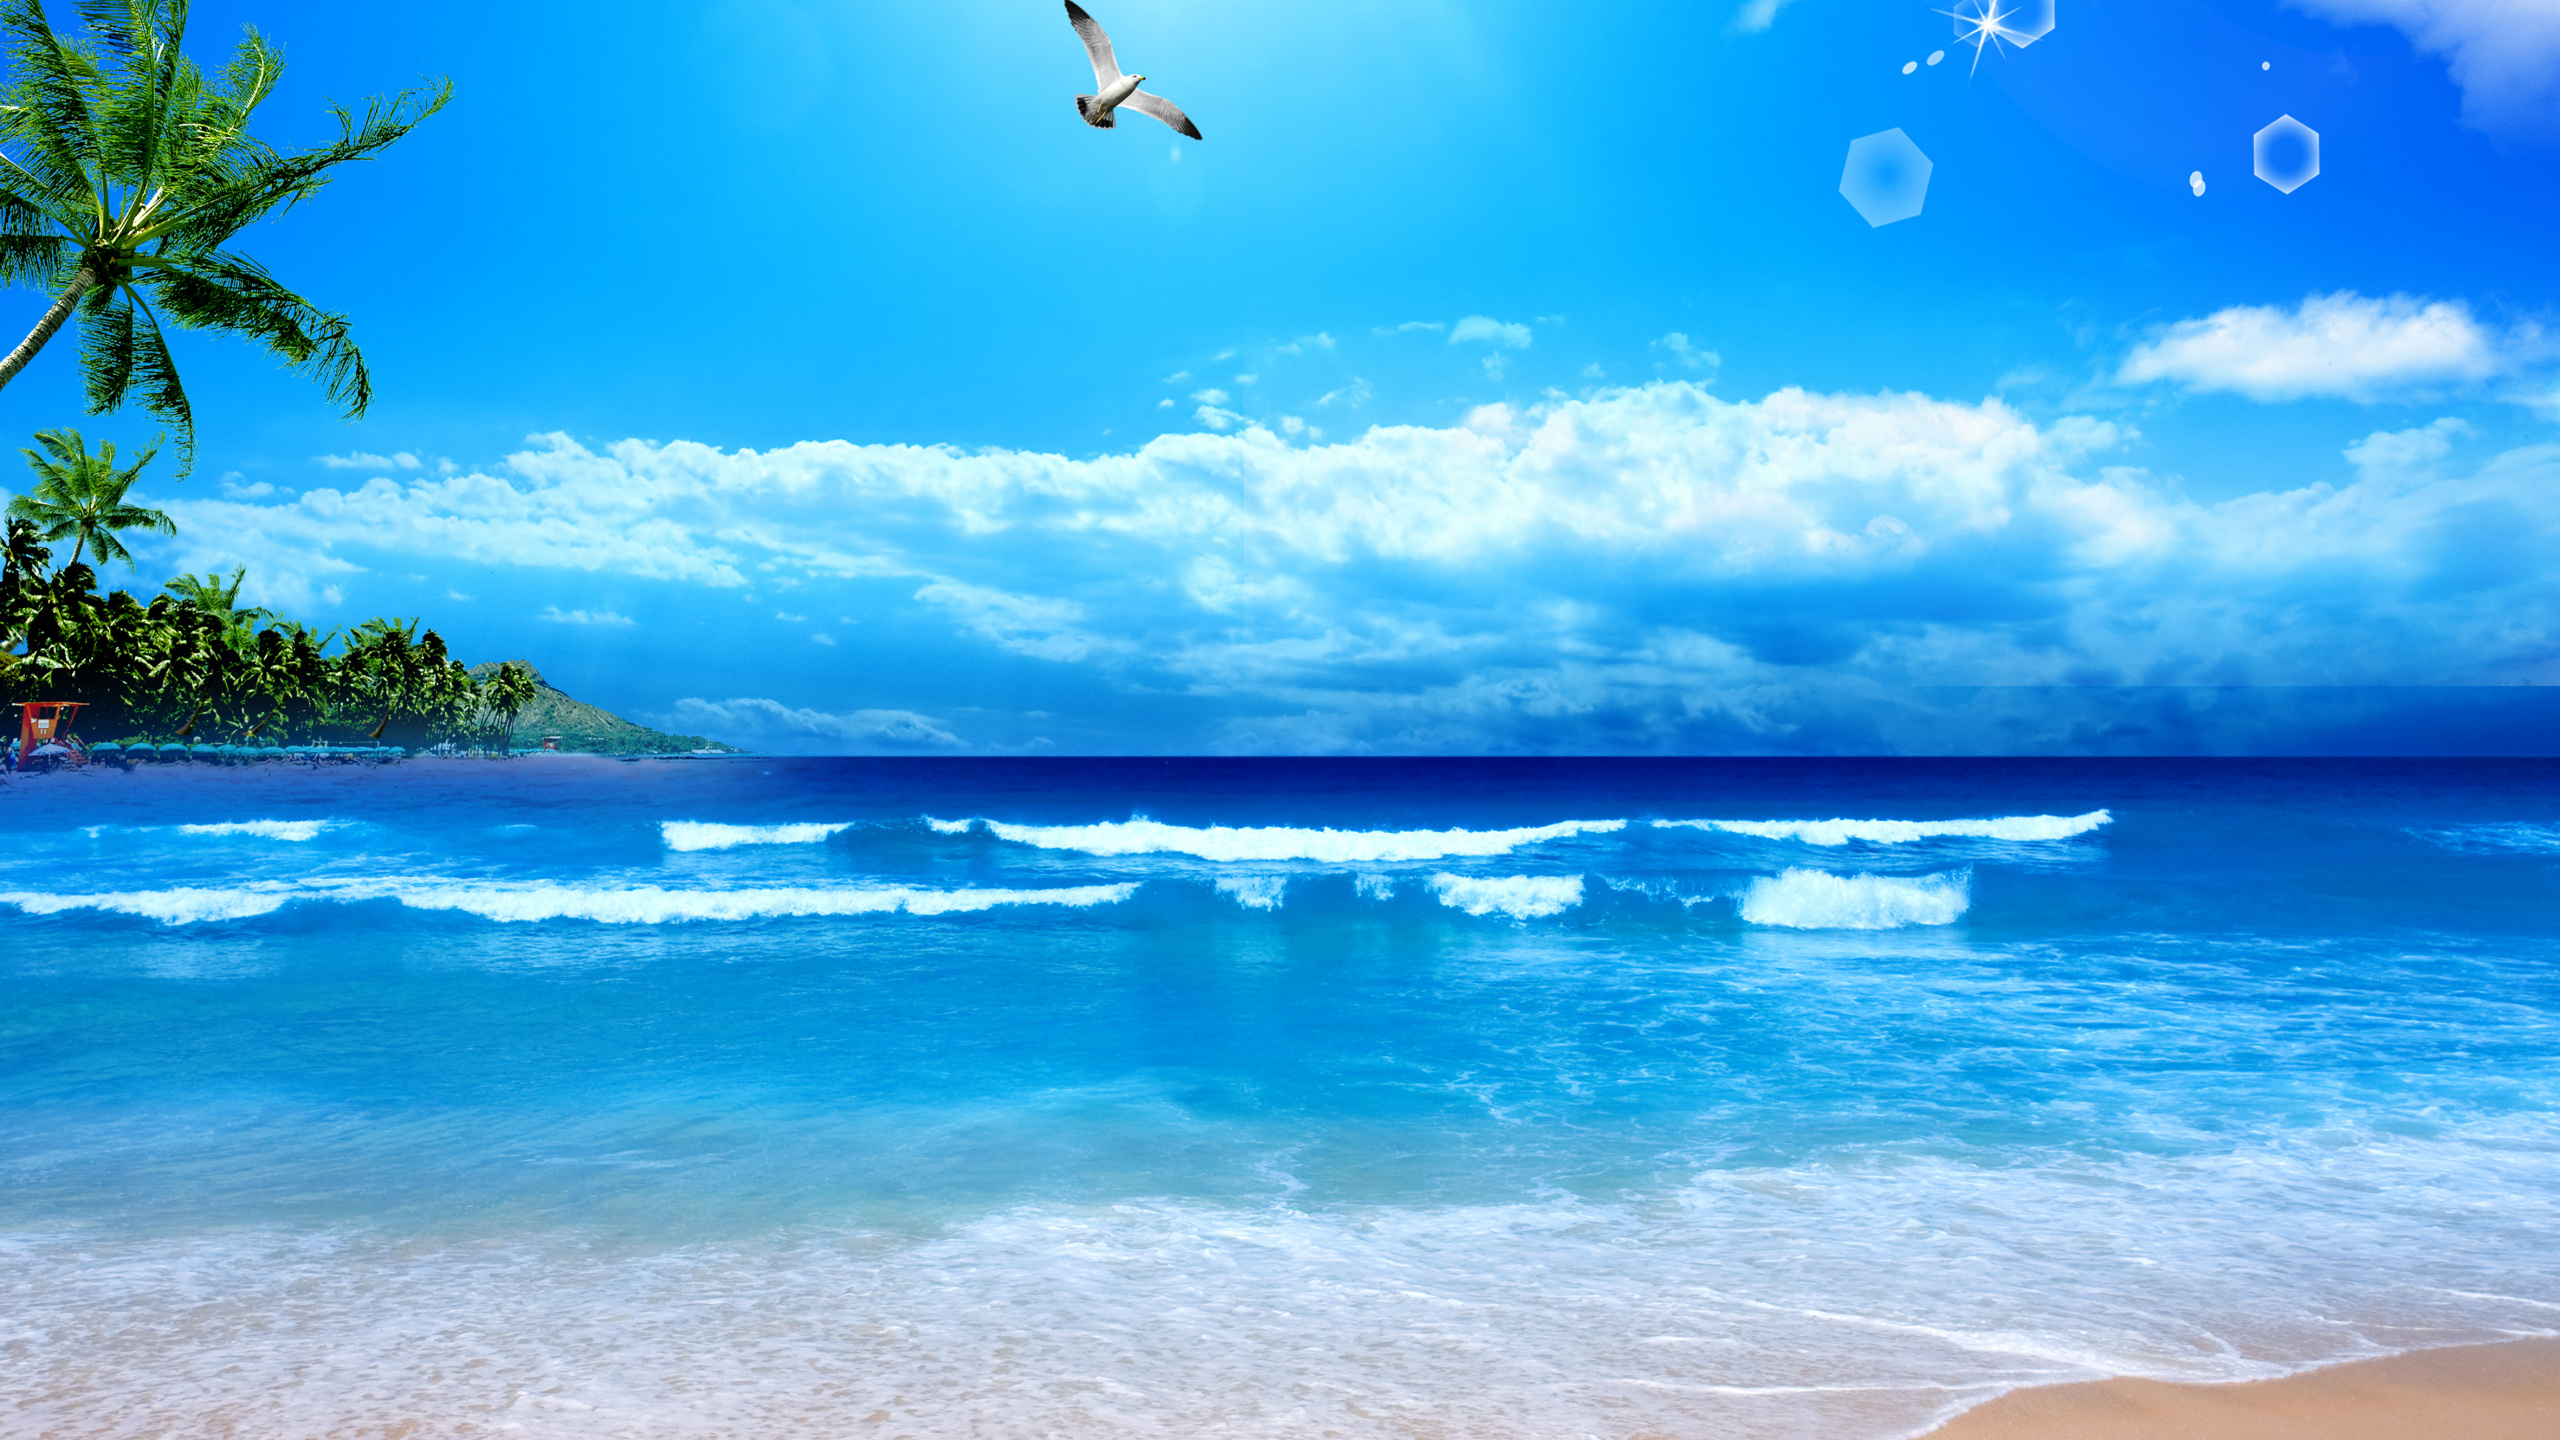 Gewässer, Ozean, Natur, Meer, Blau. Wallpaper in 2560x1440 Resolution